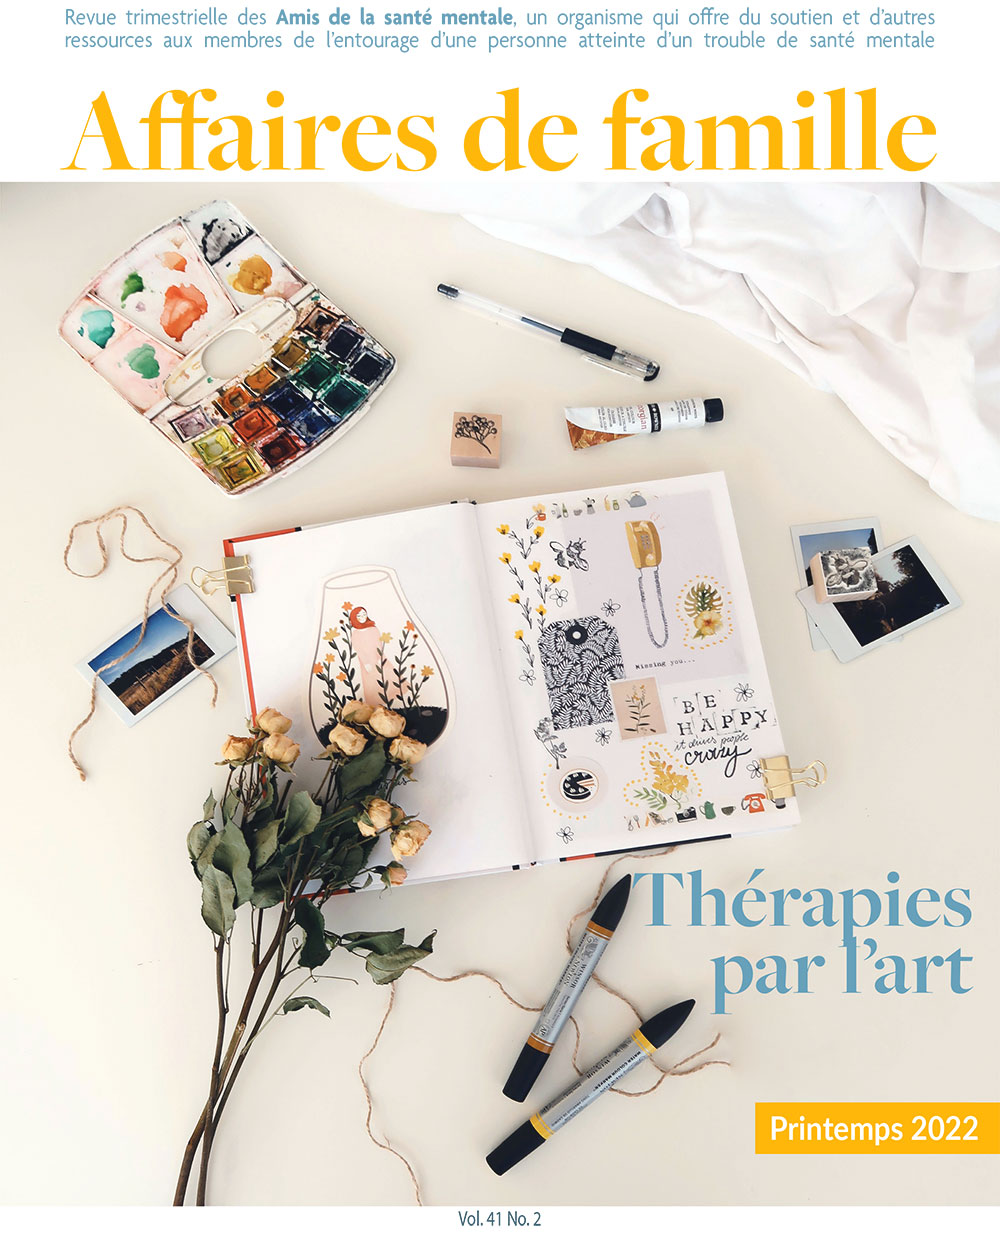 cover-publication-affaires-de-famille-printemps-2022-asm